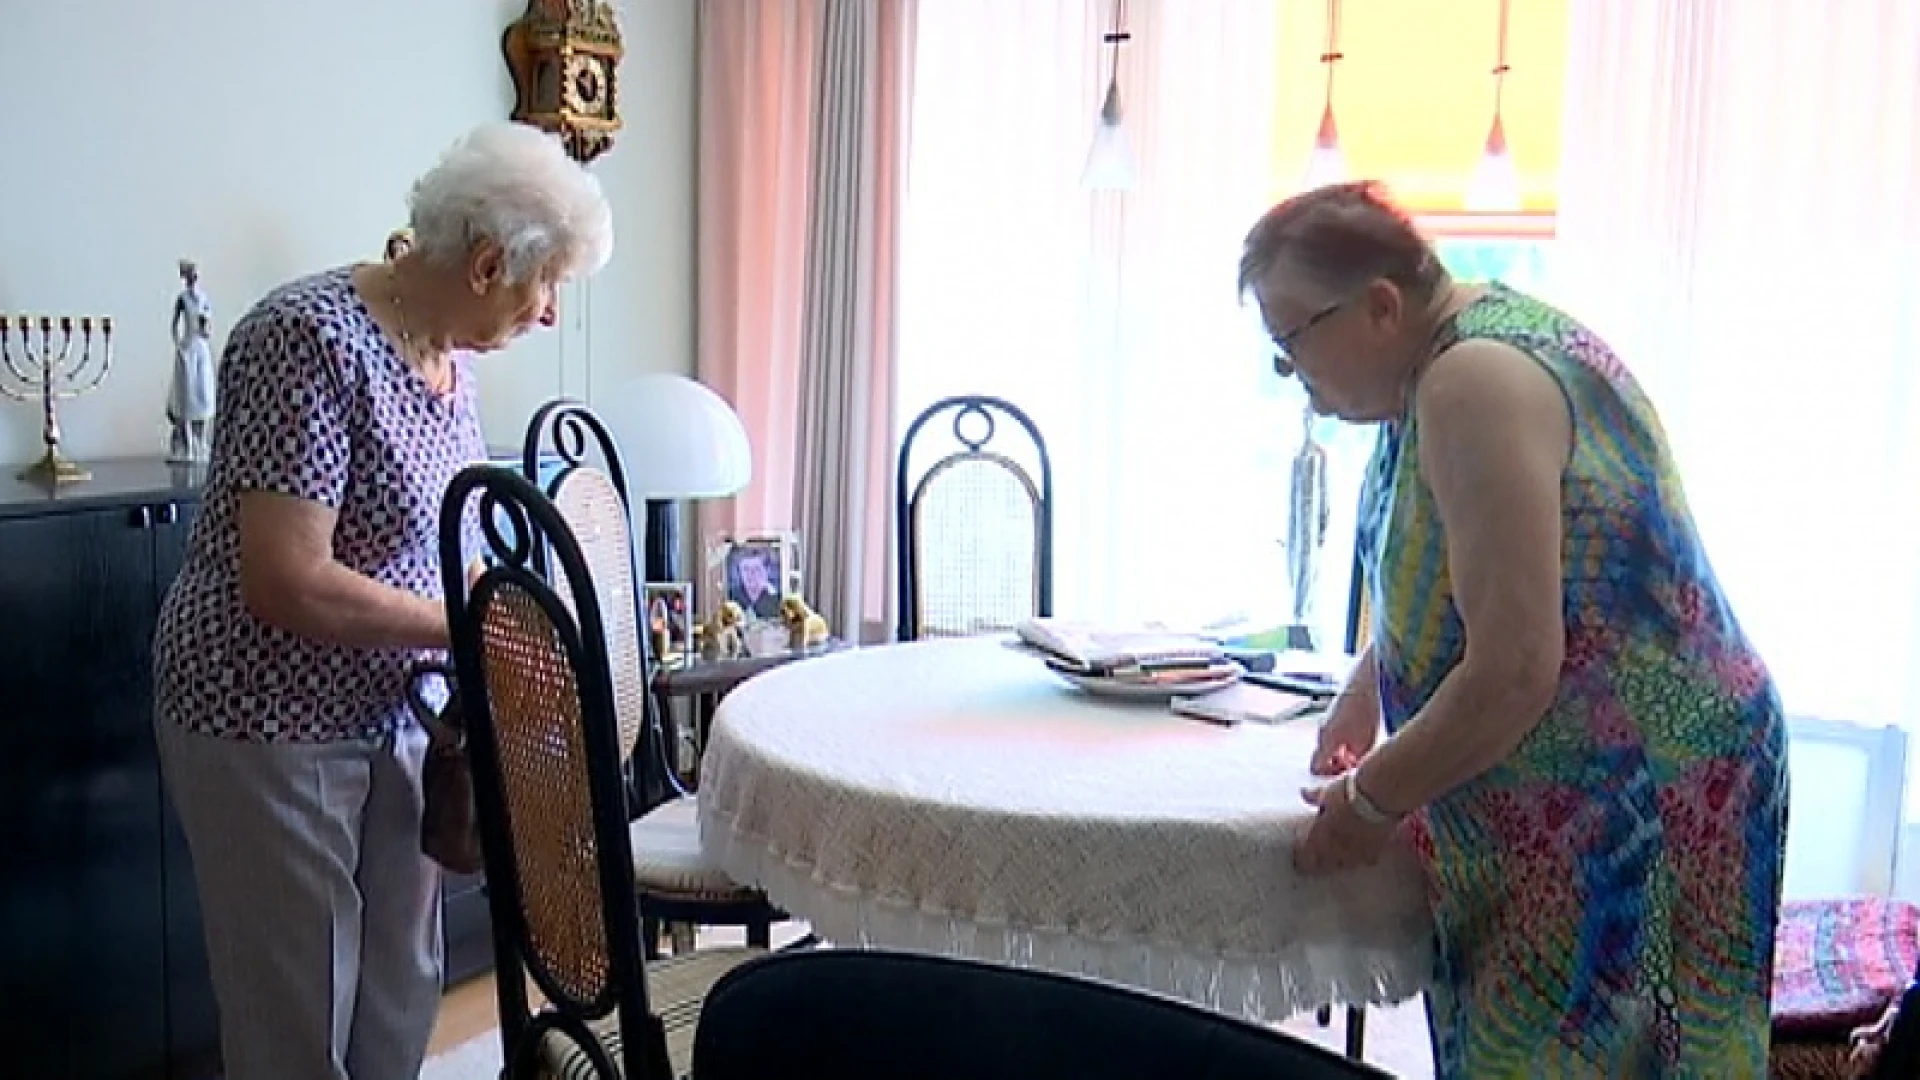 Josée (87) is mantelzorger voor haar vriendin Yvonne (89): "Ik noem dat geen opdracht"